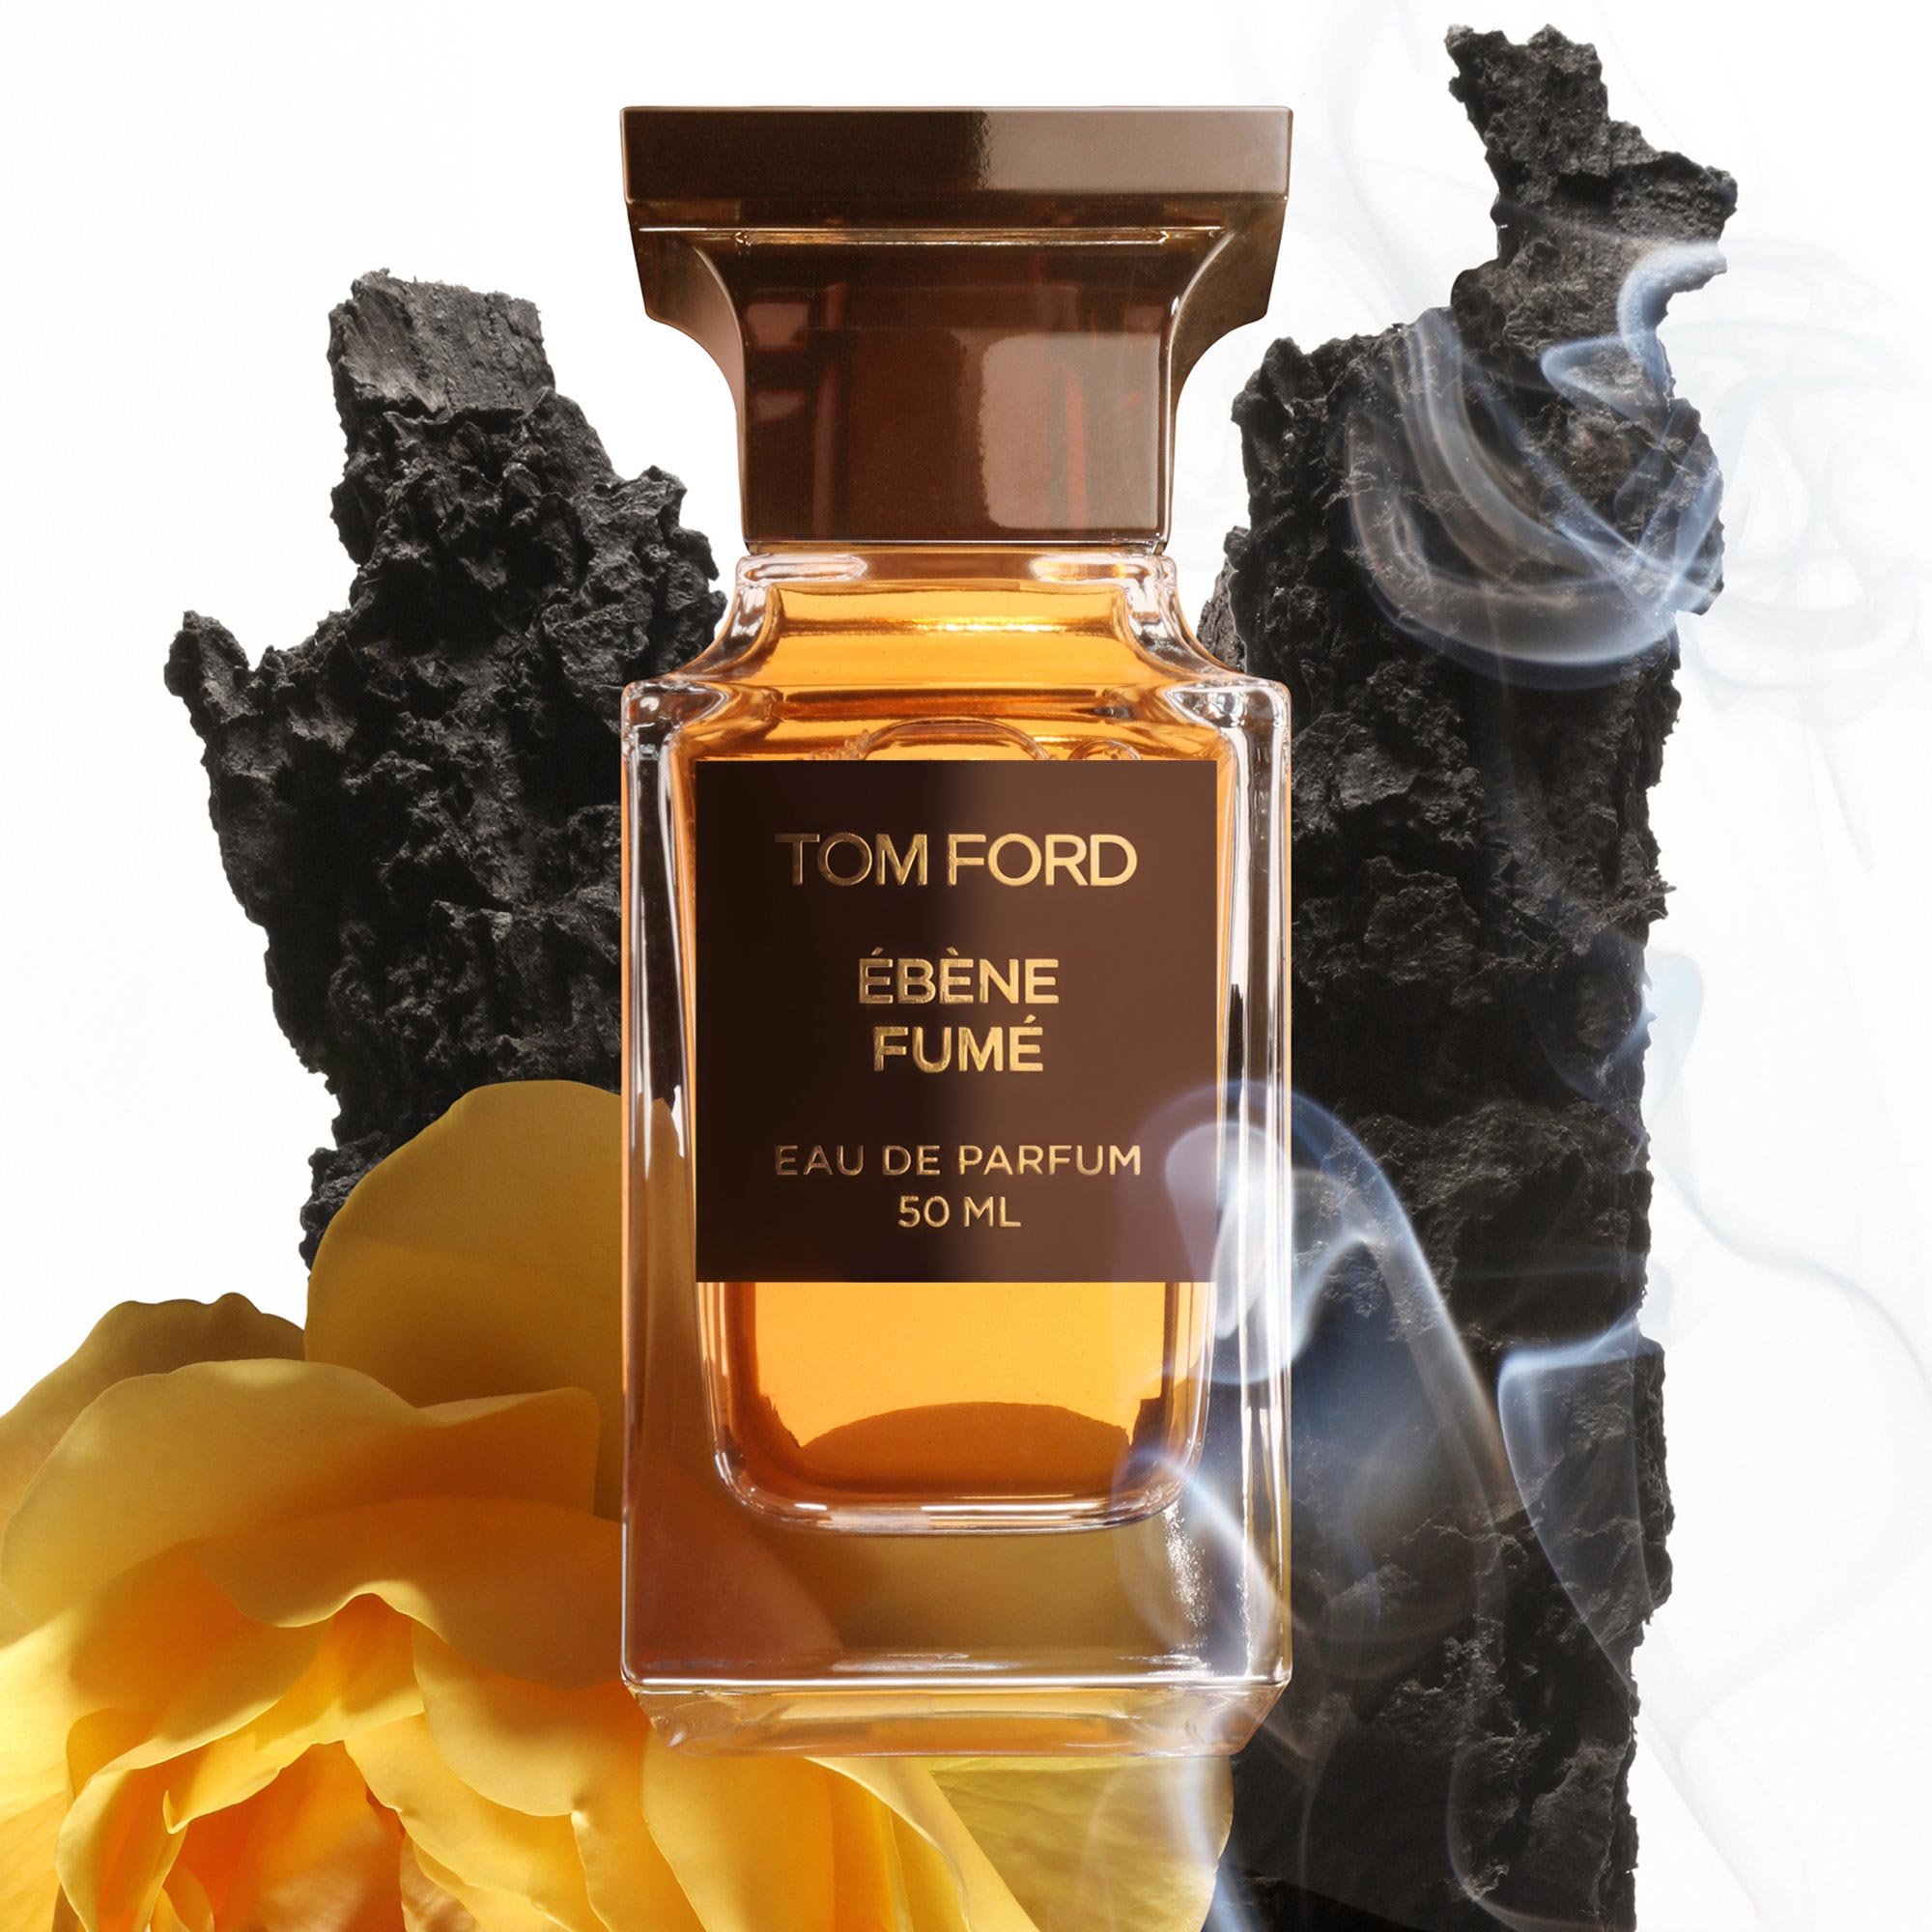 Shop the TOM FORD Ébène Fumé Eau de Parfum on Beautylish.com